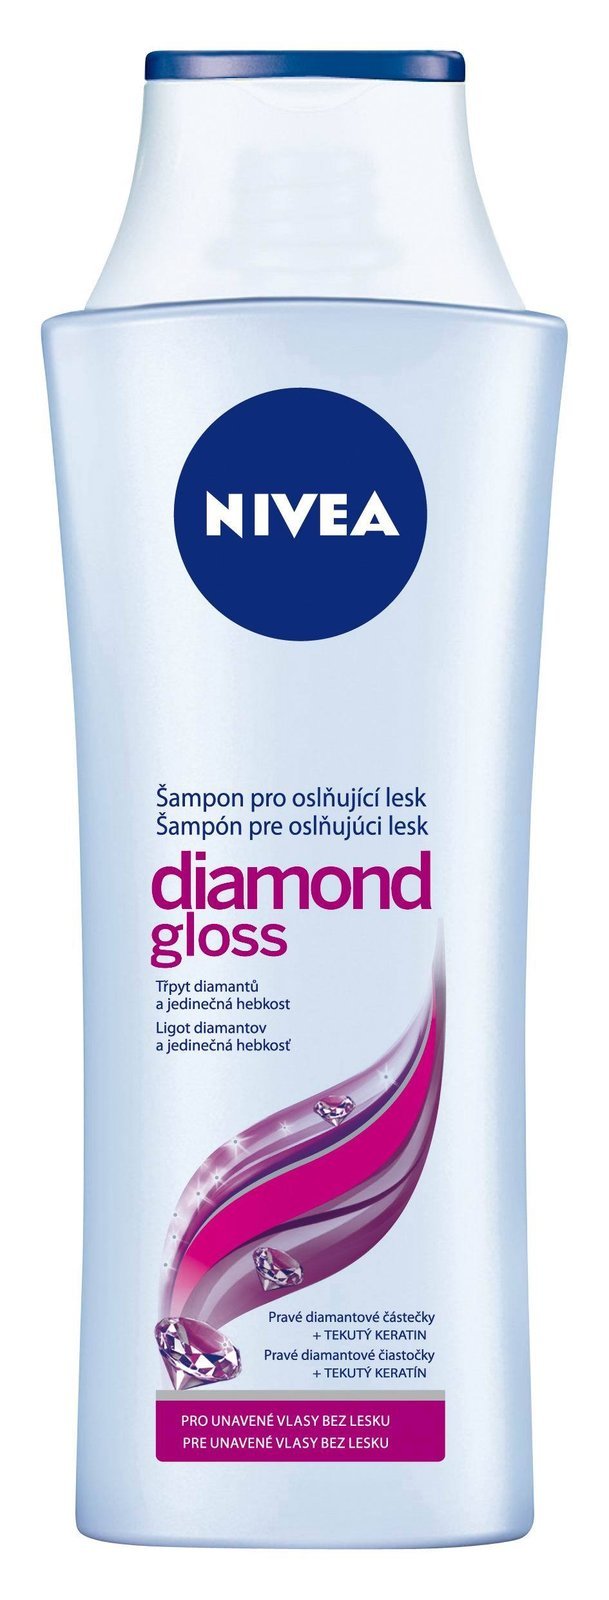 Šampon pro oslňující lesk Diamond Gloss, Nivea, 400 ml od 84 Kč.